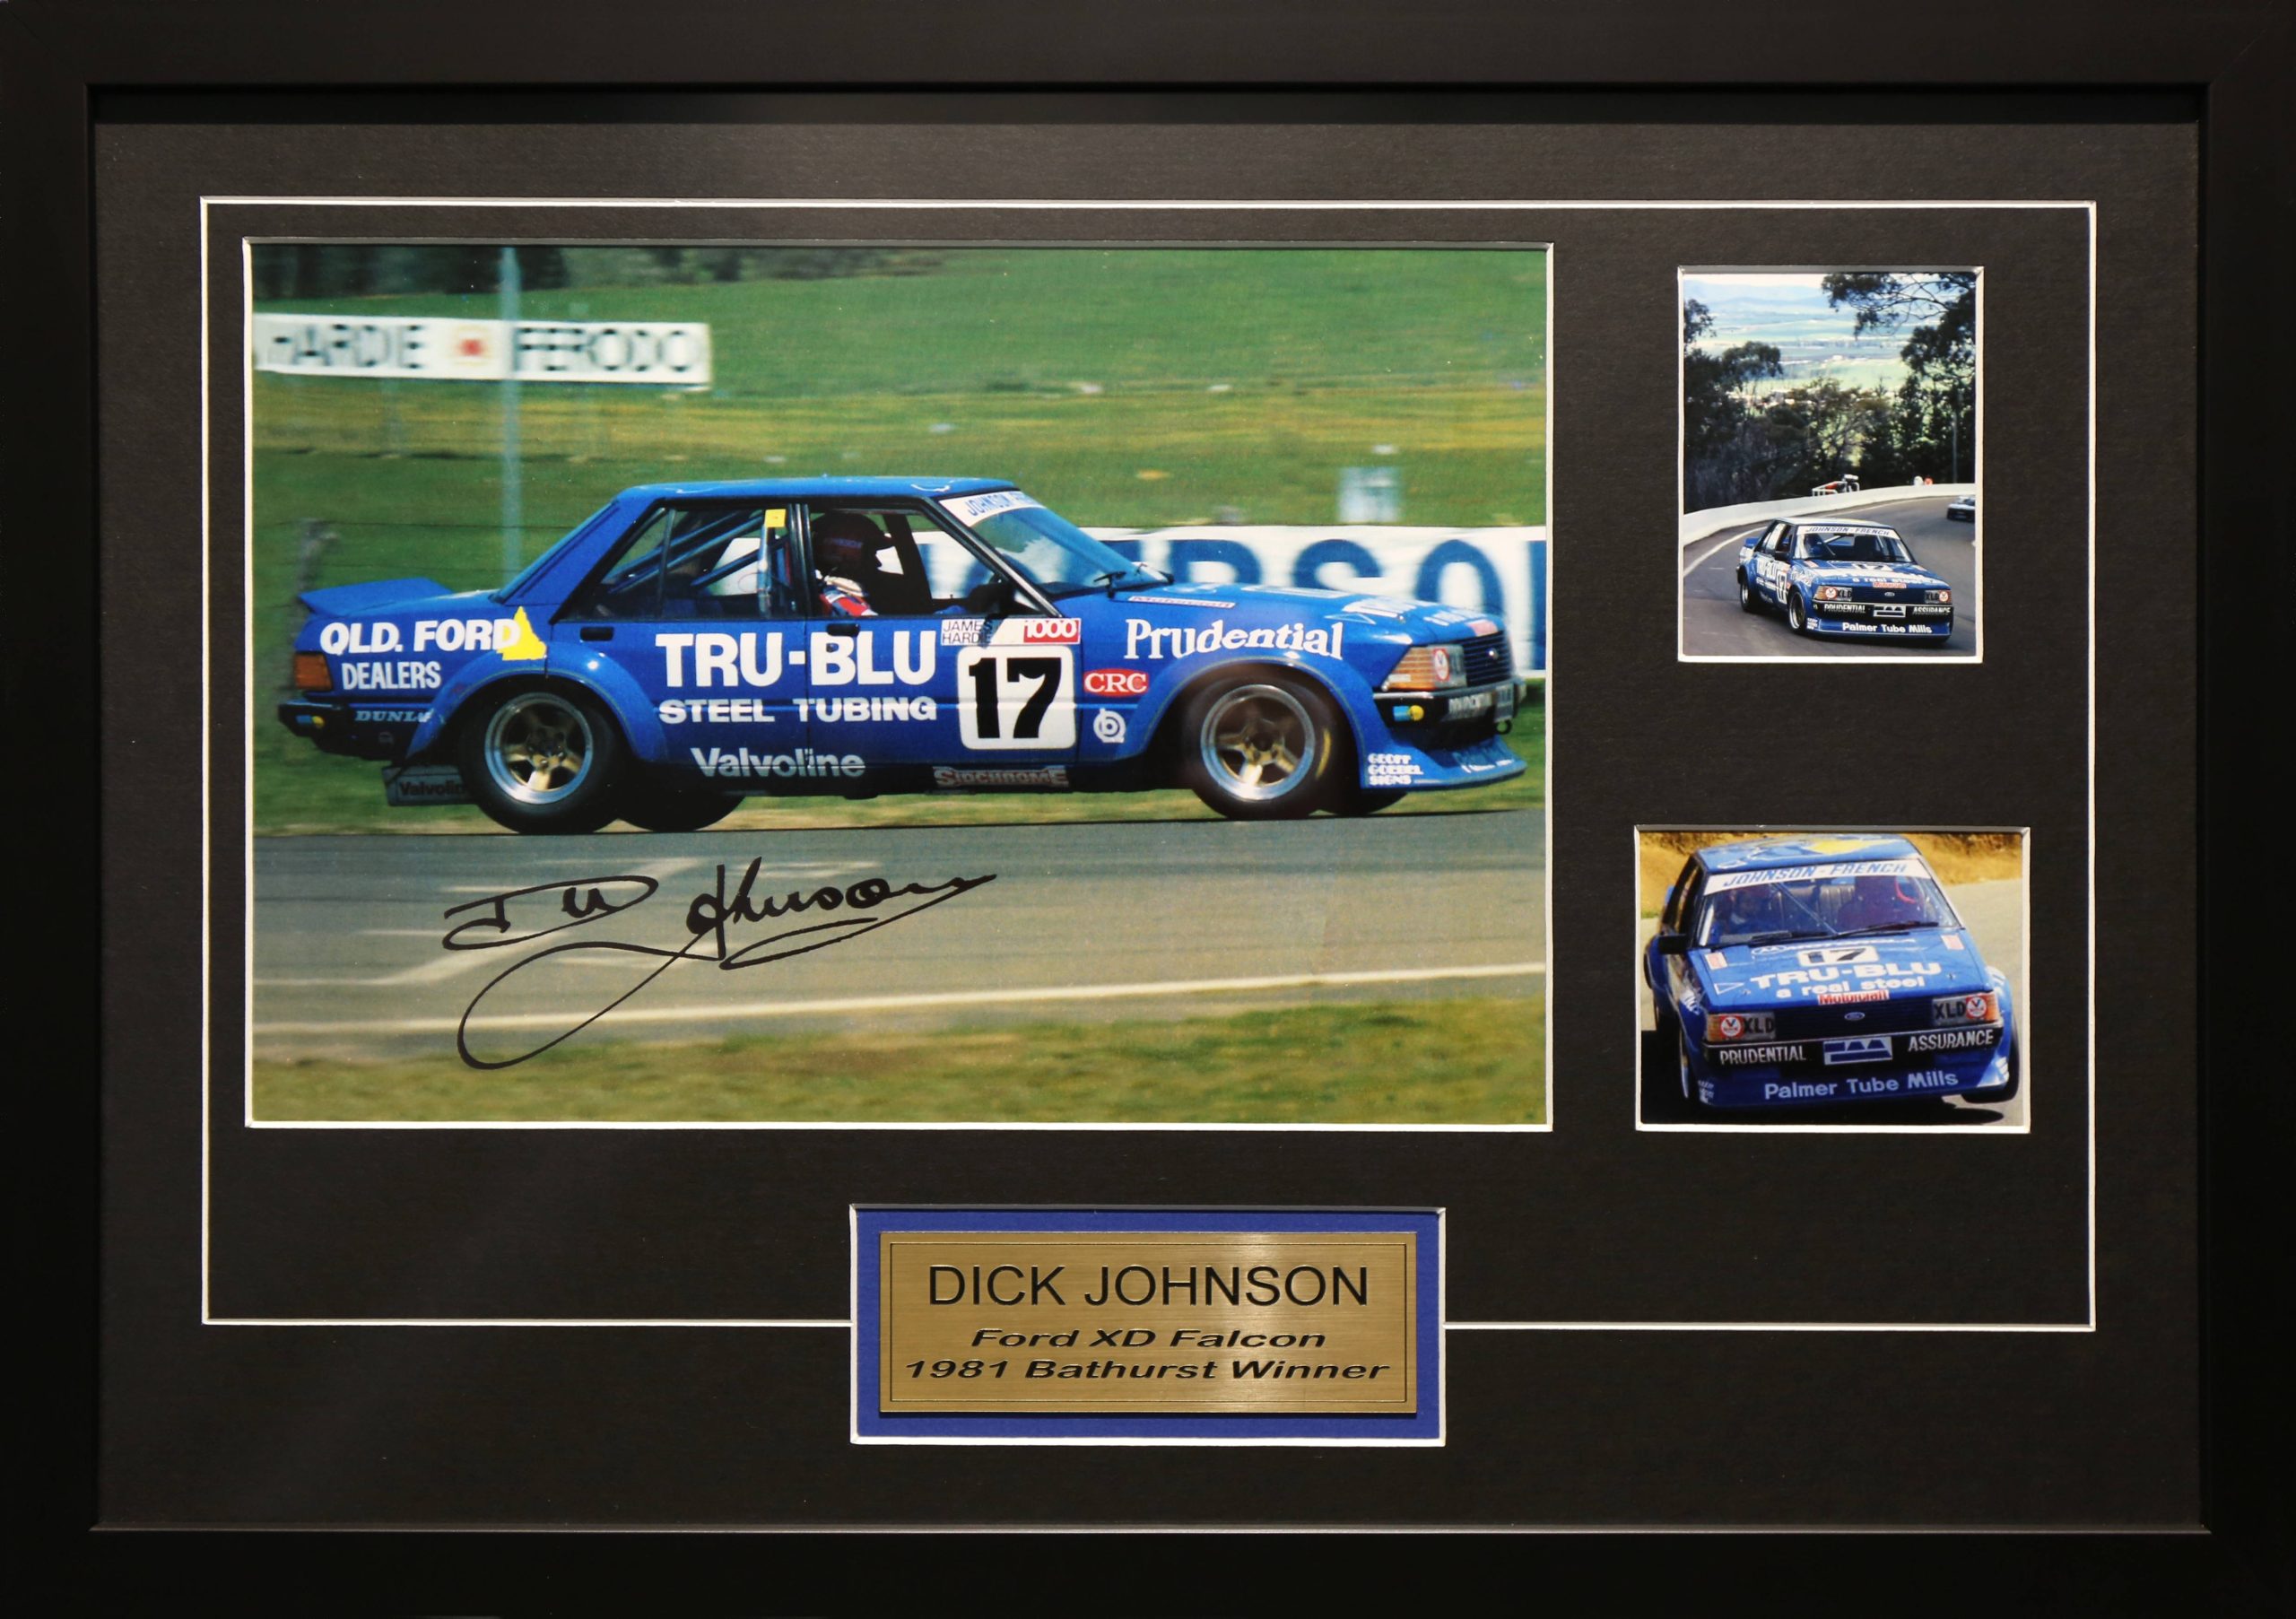 Dick Johnson Signed & Framed Motor Racing Memorabilia. Bathurst 1981 Ford XD Falcon Winner.